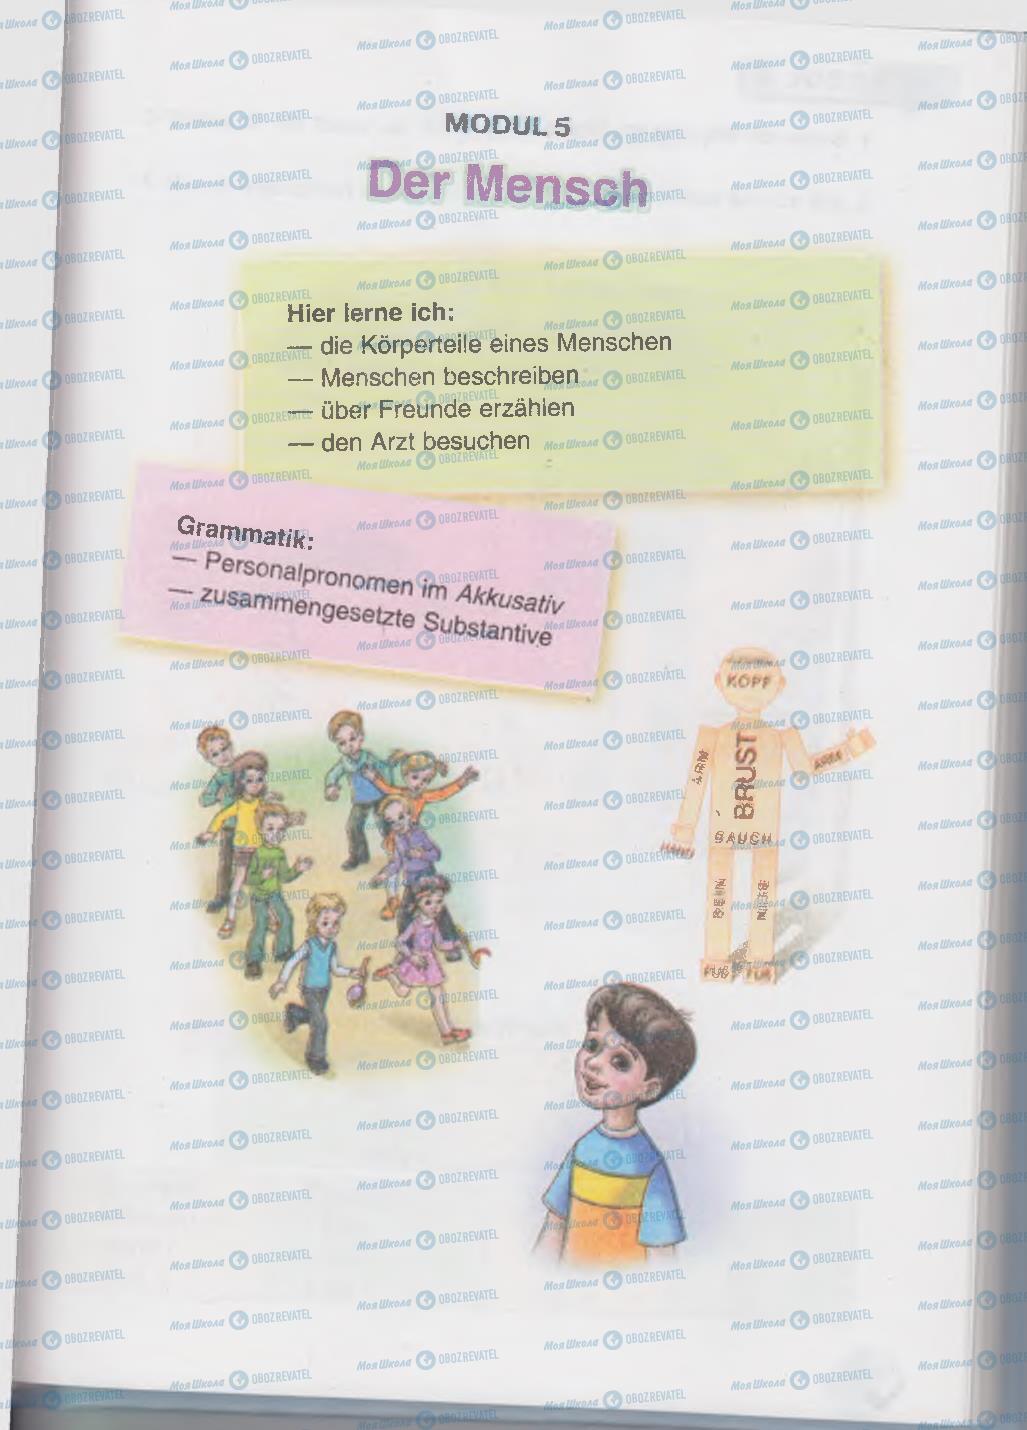 Підручники Німецька мова 6 клас сторінка 119